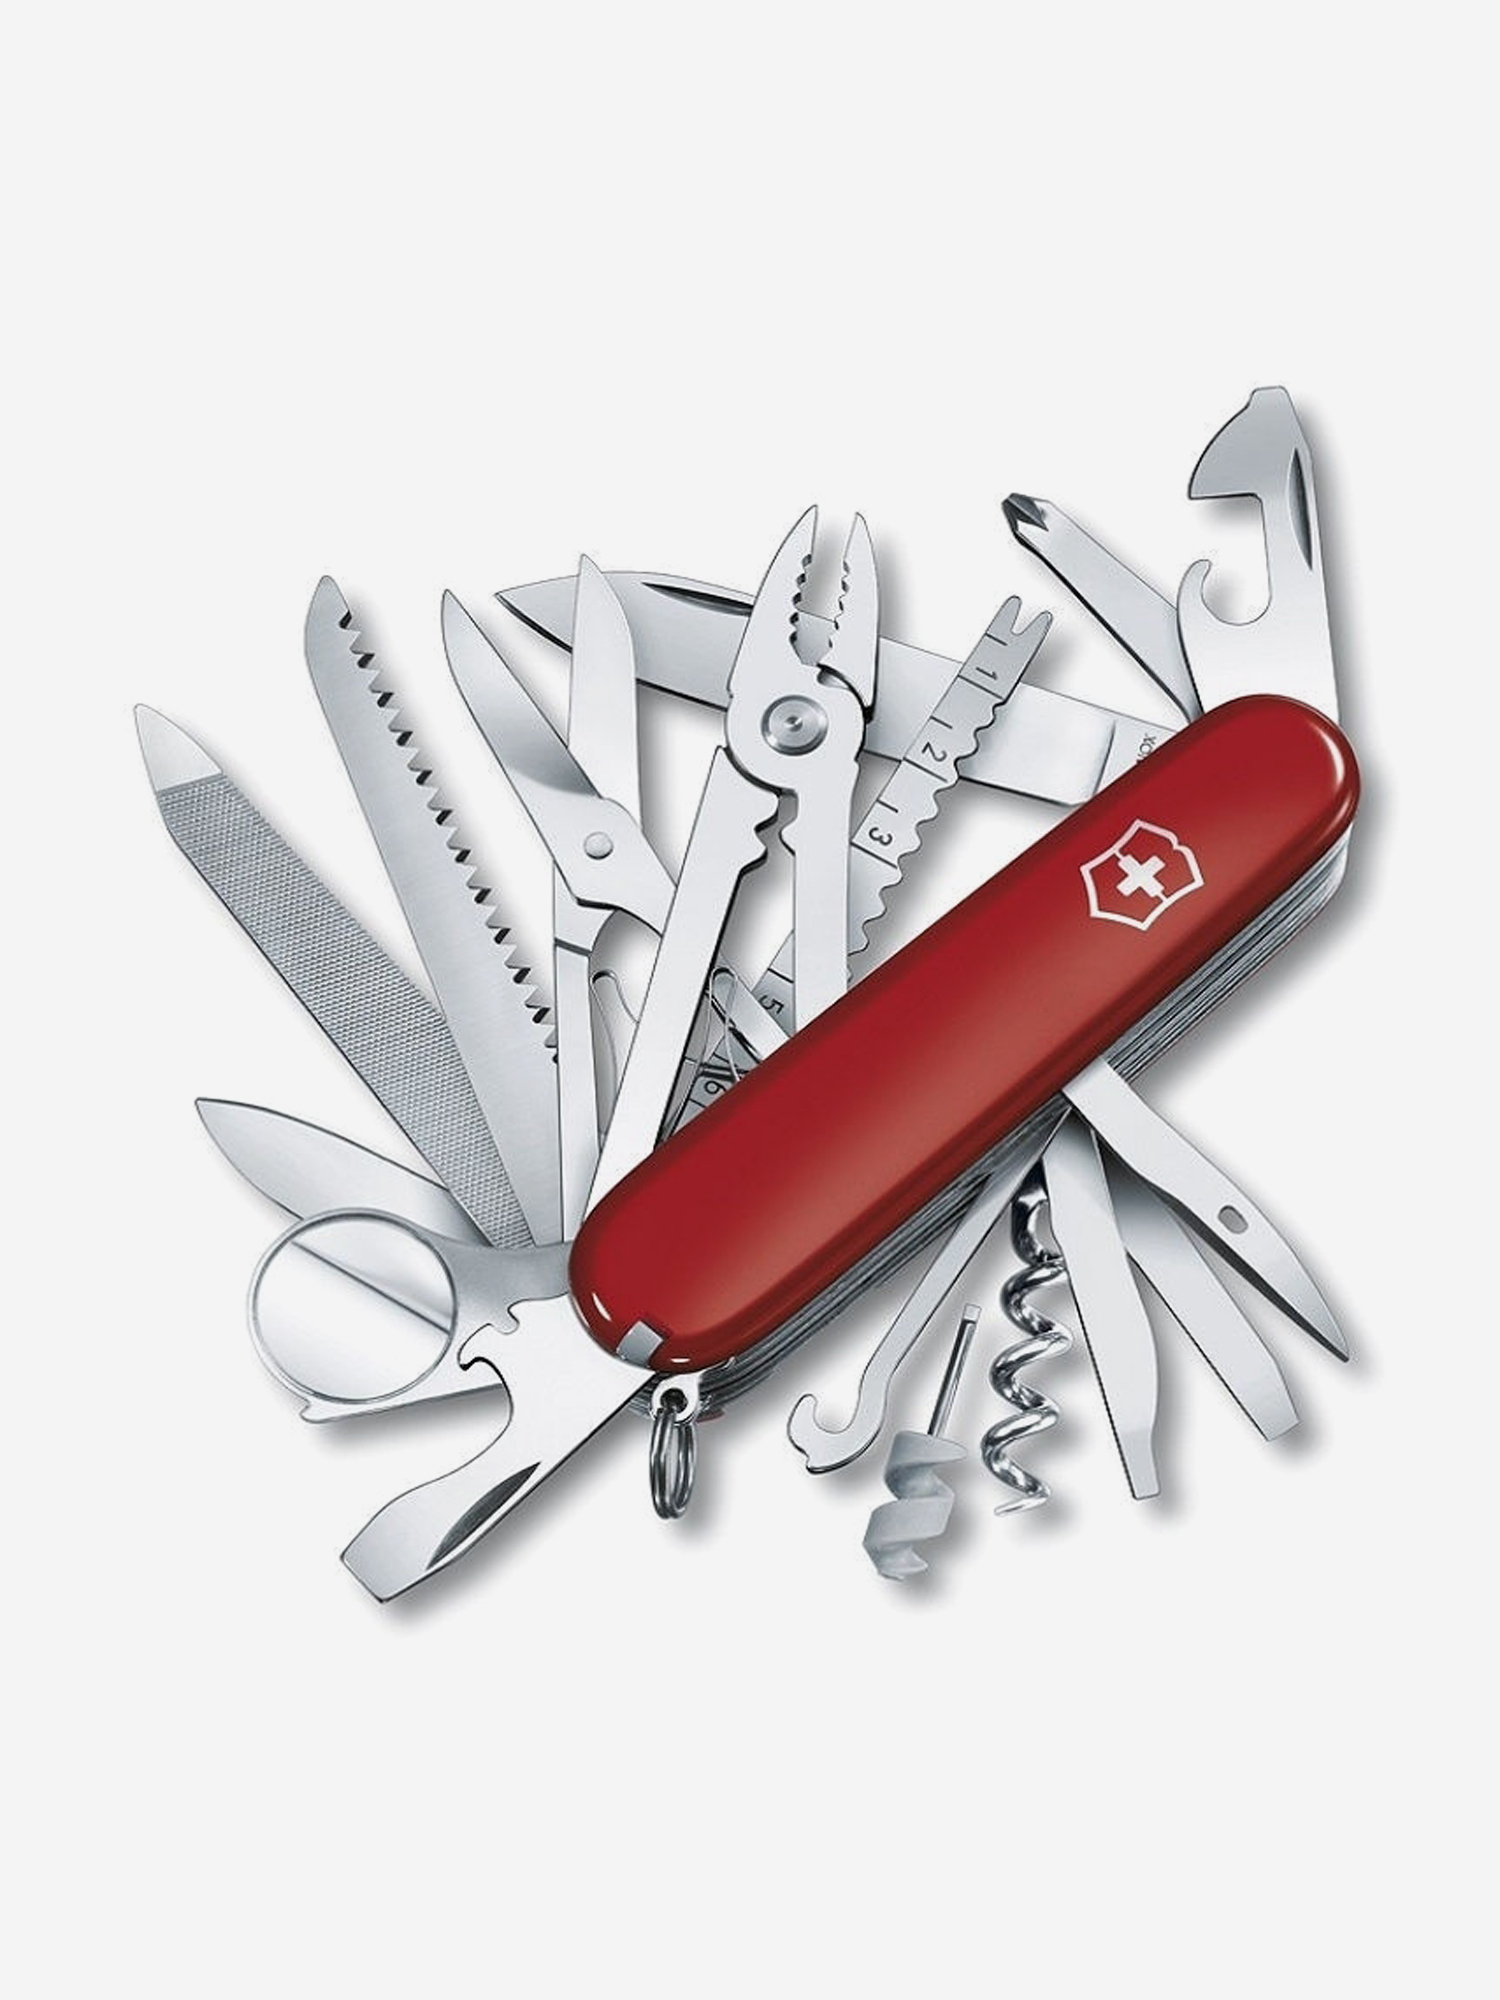 Нож складной Victorinox SwissChamp, 91 мм, 33 функции, Красный нож складной victorinox fisherman 91 мм 18 функций красный